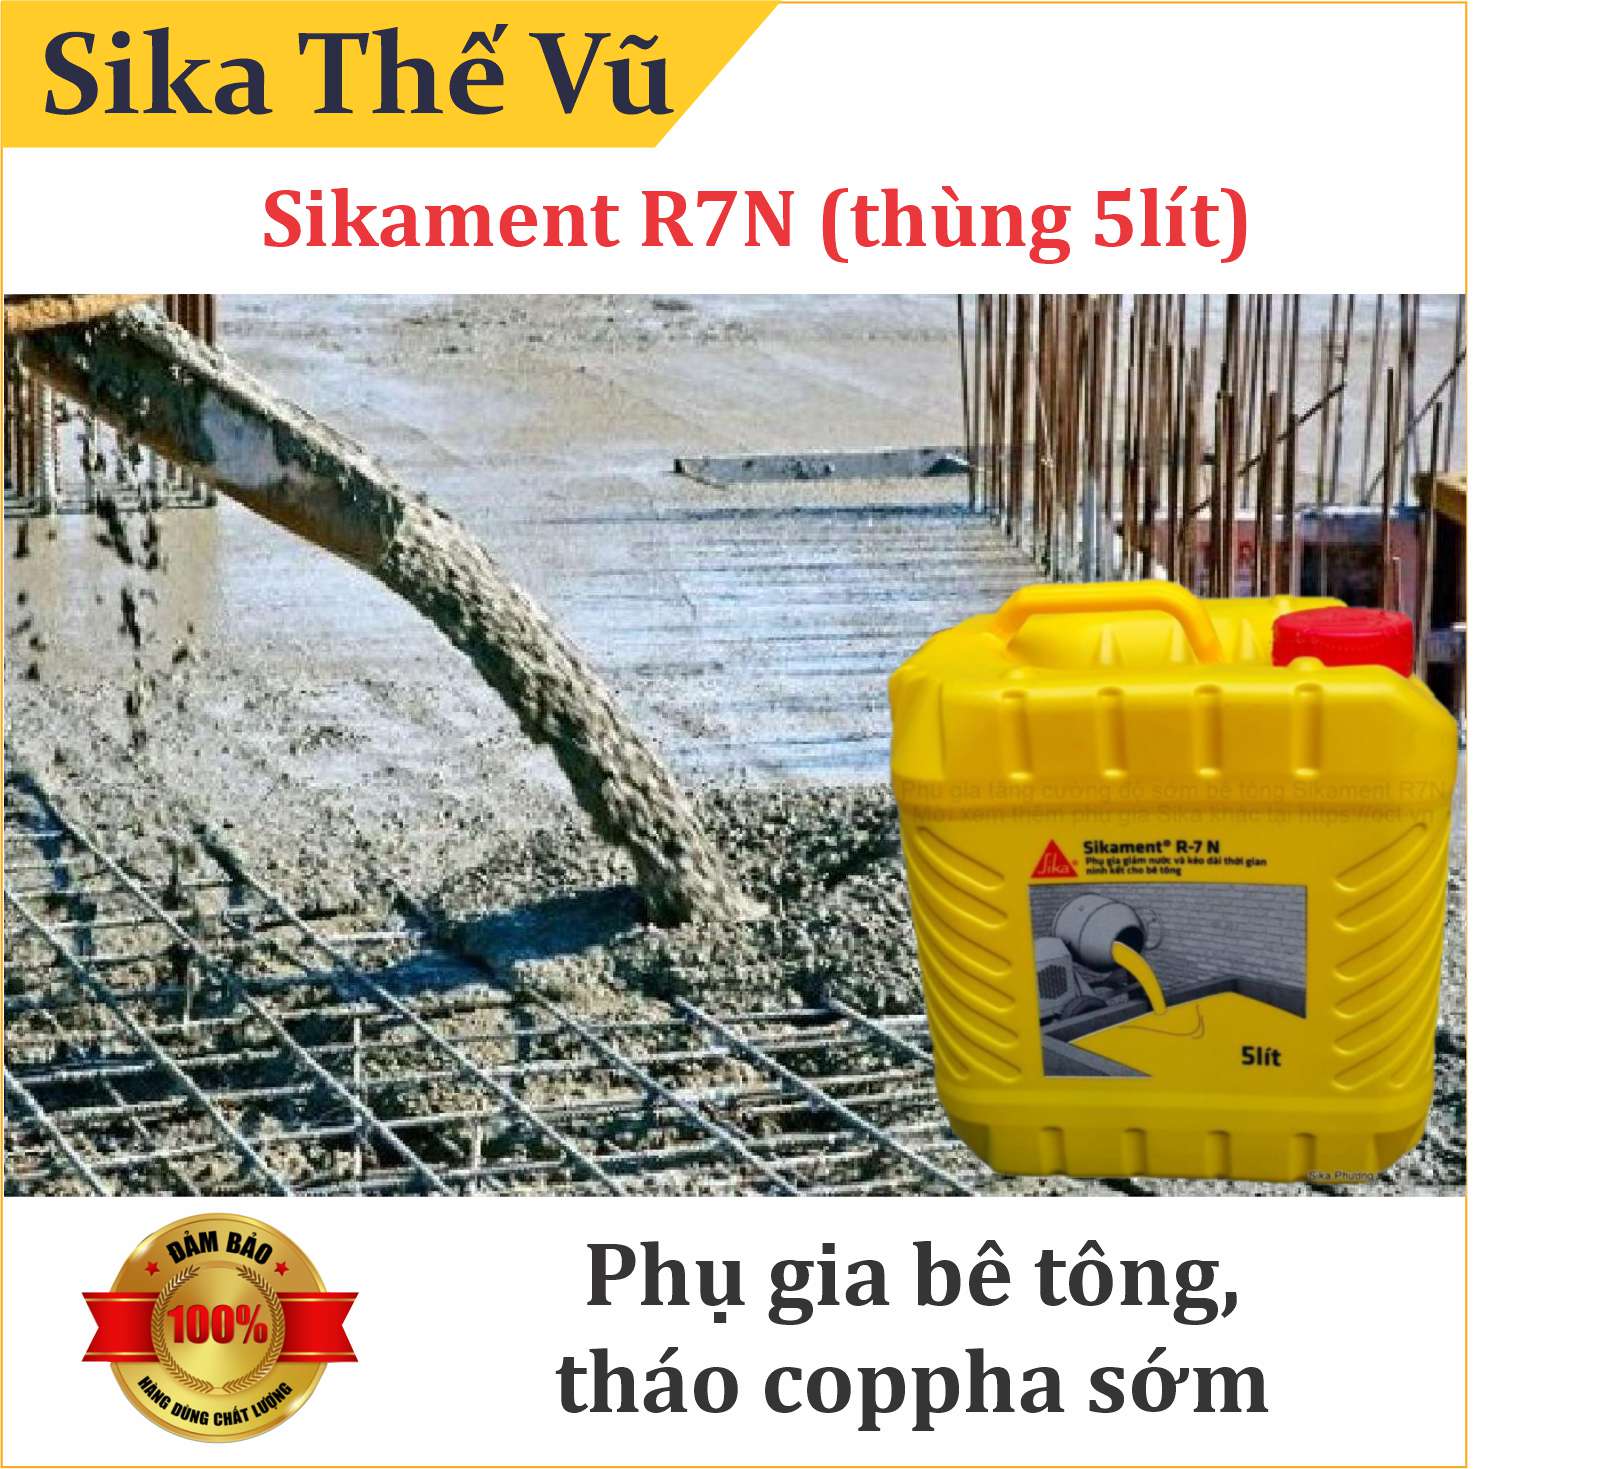 Phụ gia bê tông dân dụng giúp giảm nước, kéo dài thời gian ninh kết bê tông - Sikament R7N (thùng 5lít)